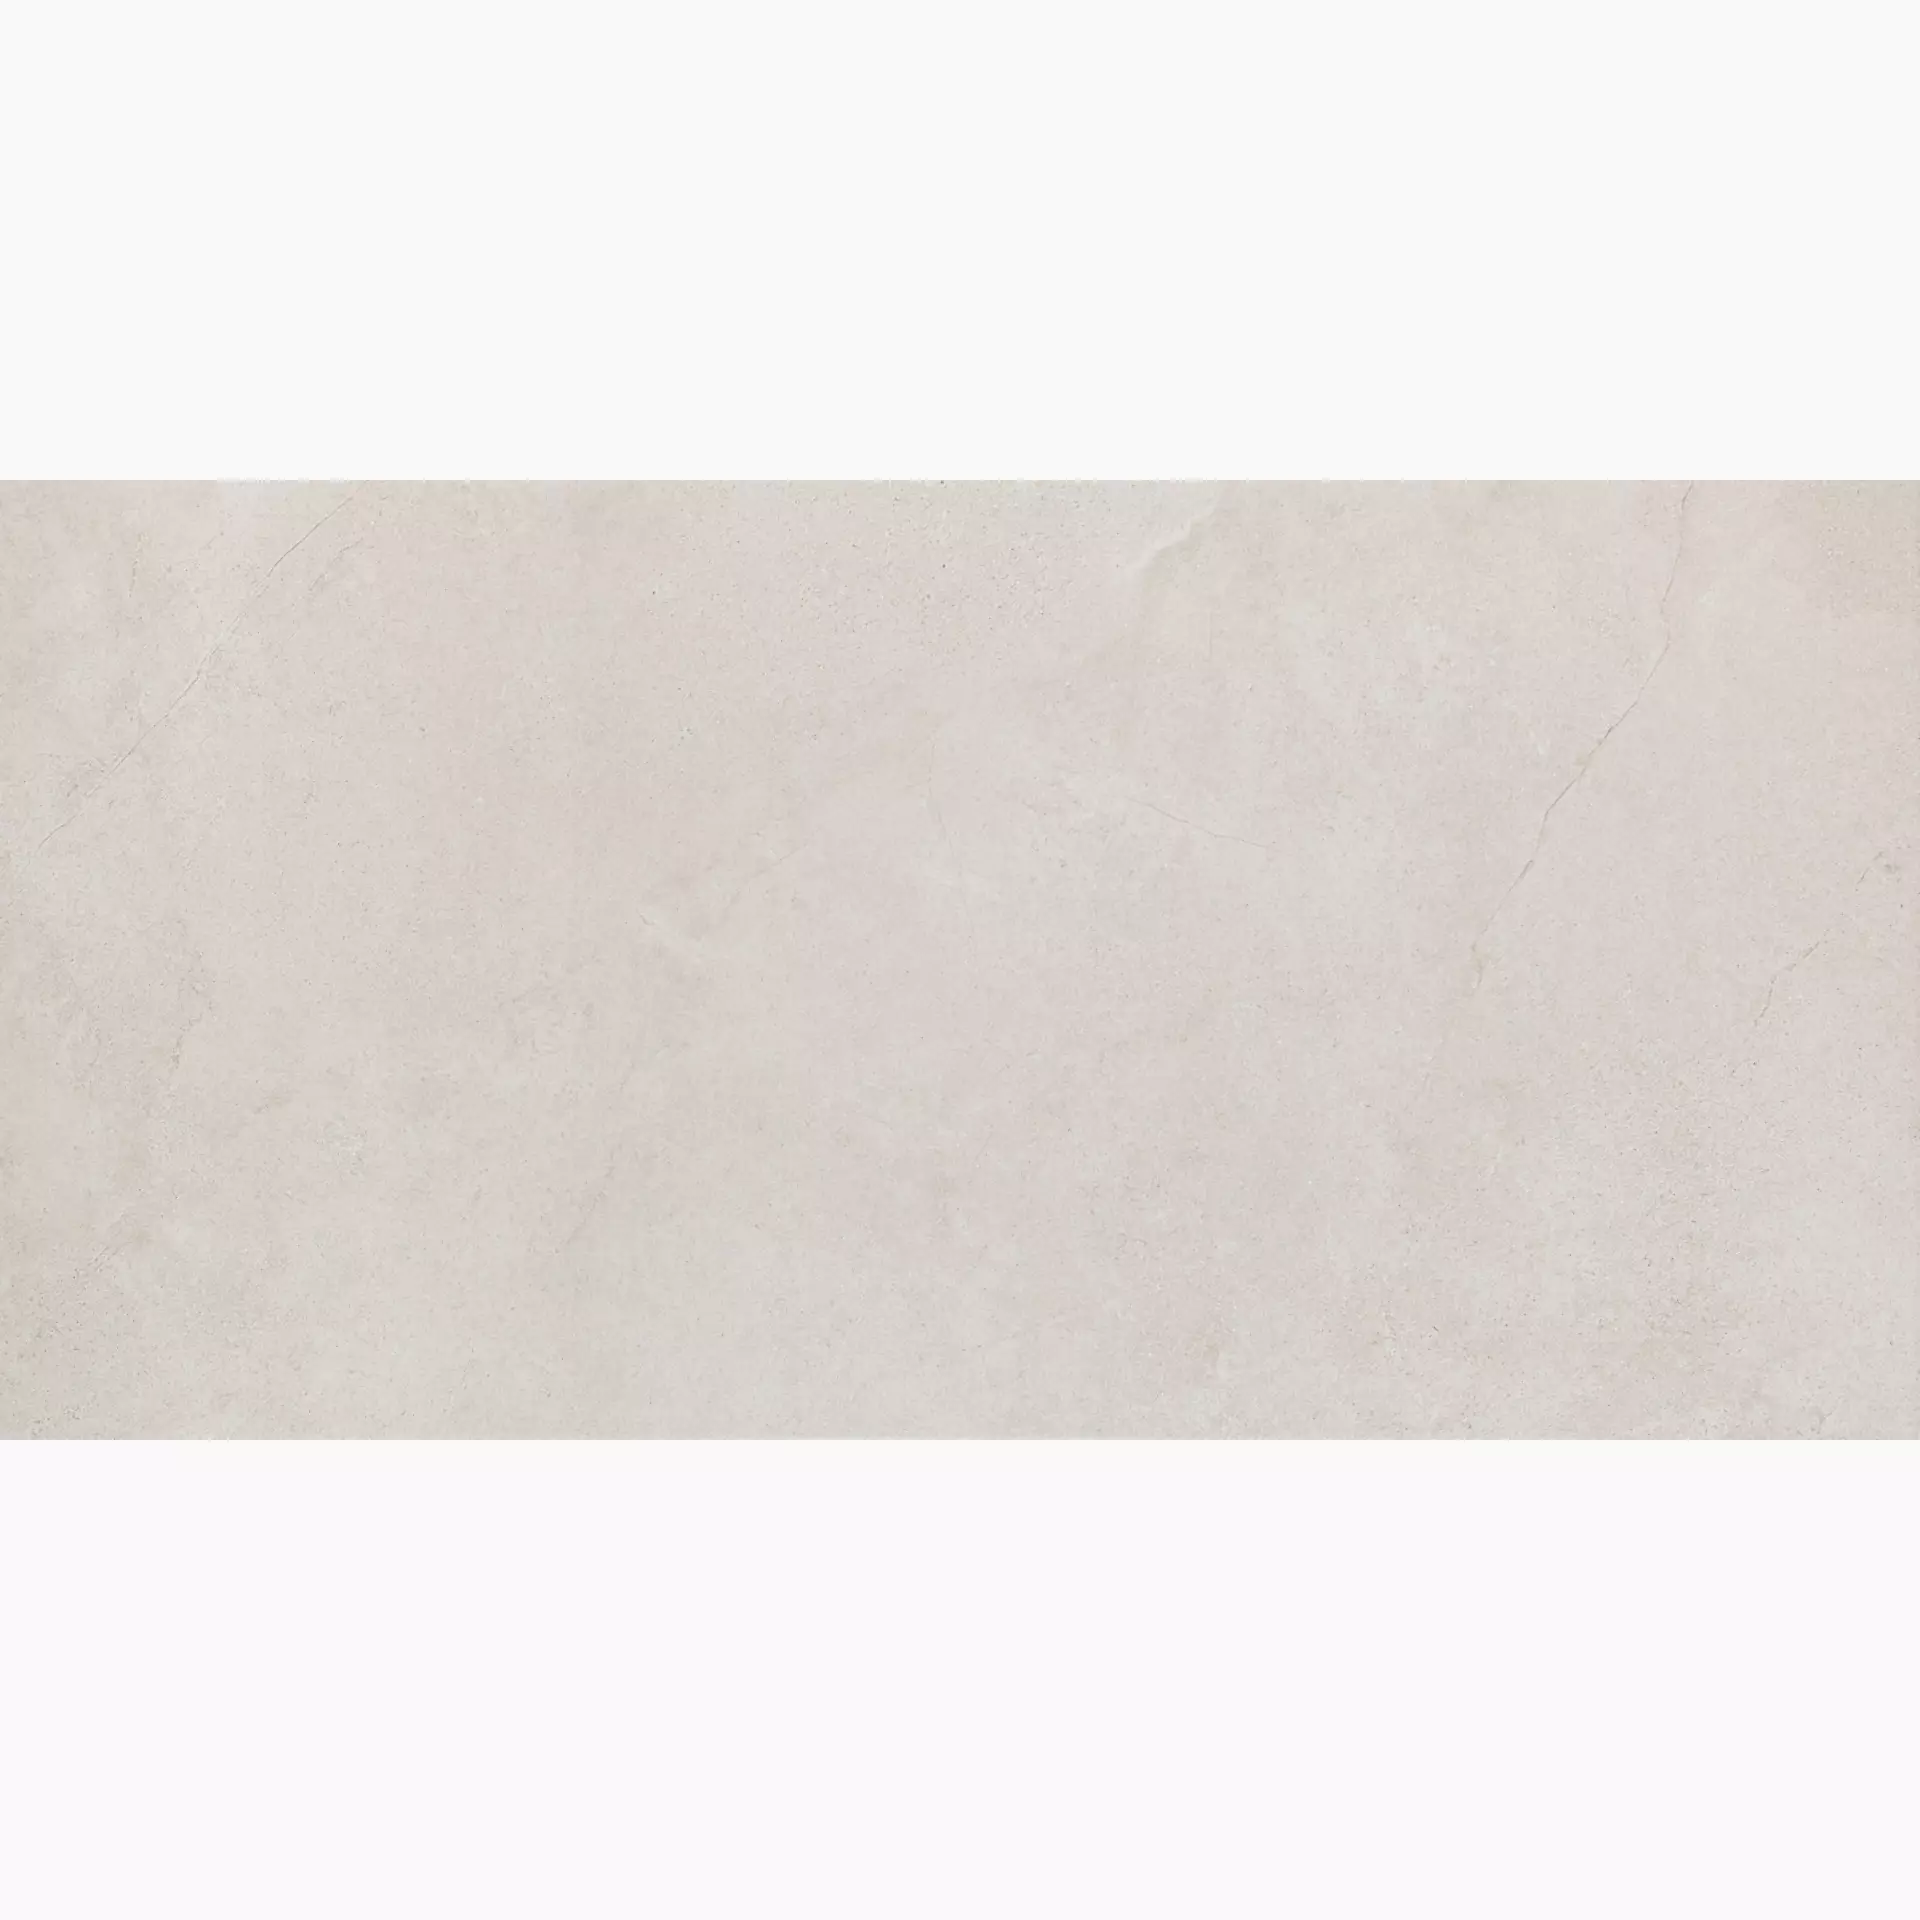 Bodenfliese,Wandfliese Marazzi Mystone Kashmir Bianco Naturale – Matt Bianco MLP3 matt natur 60x120cm rektifiziert 10mm